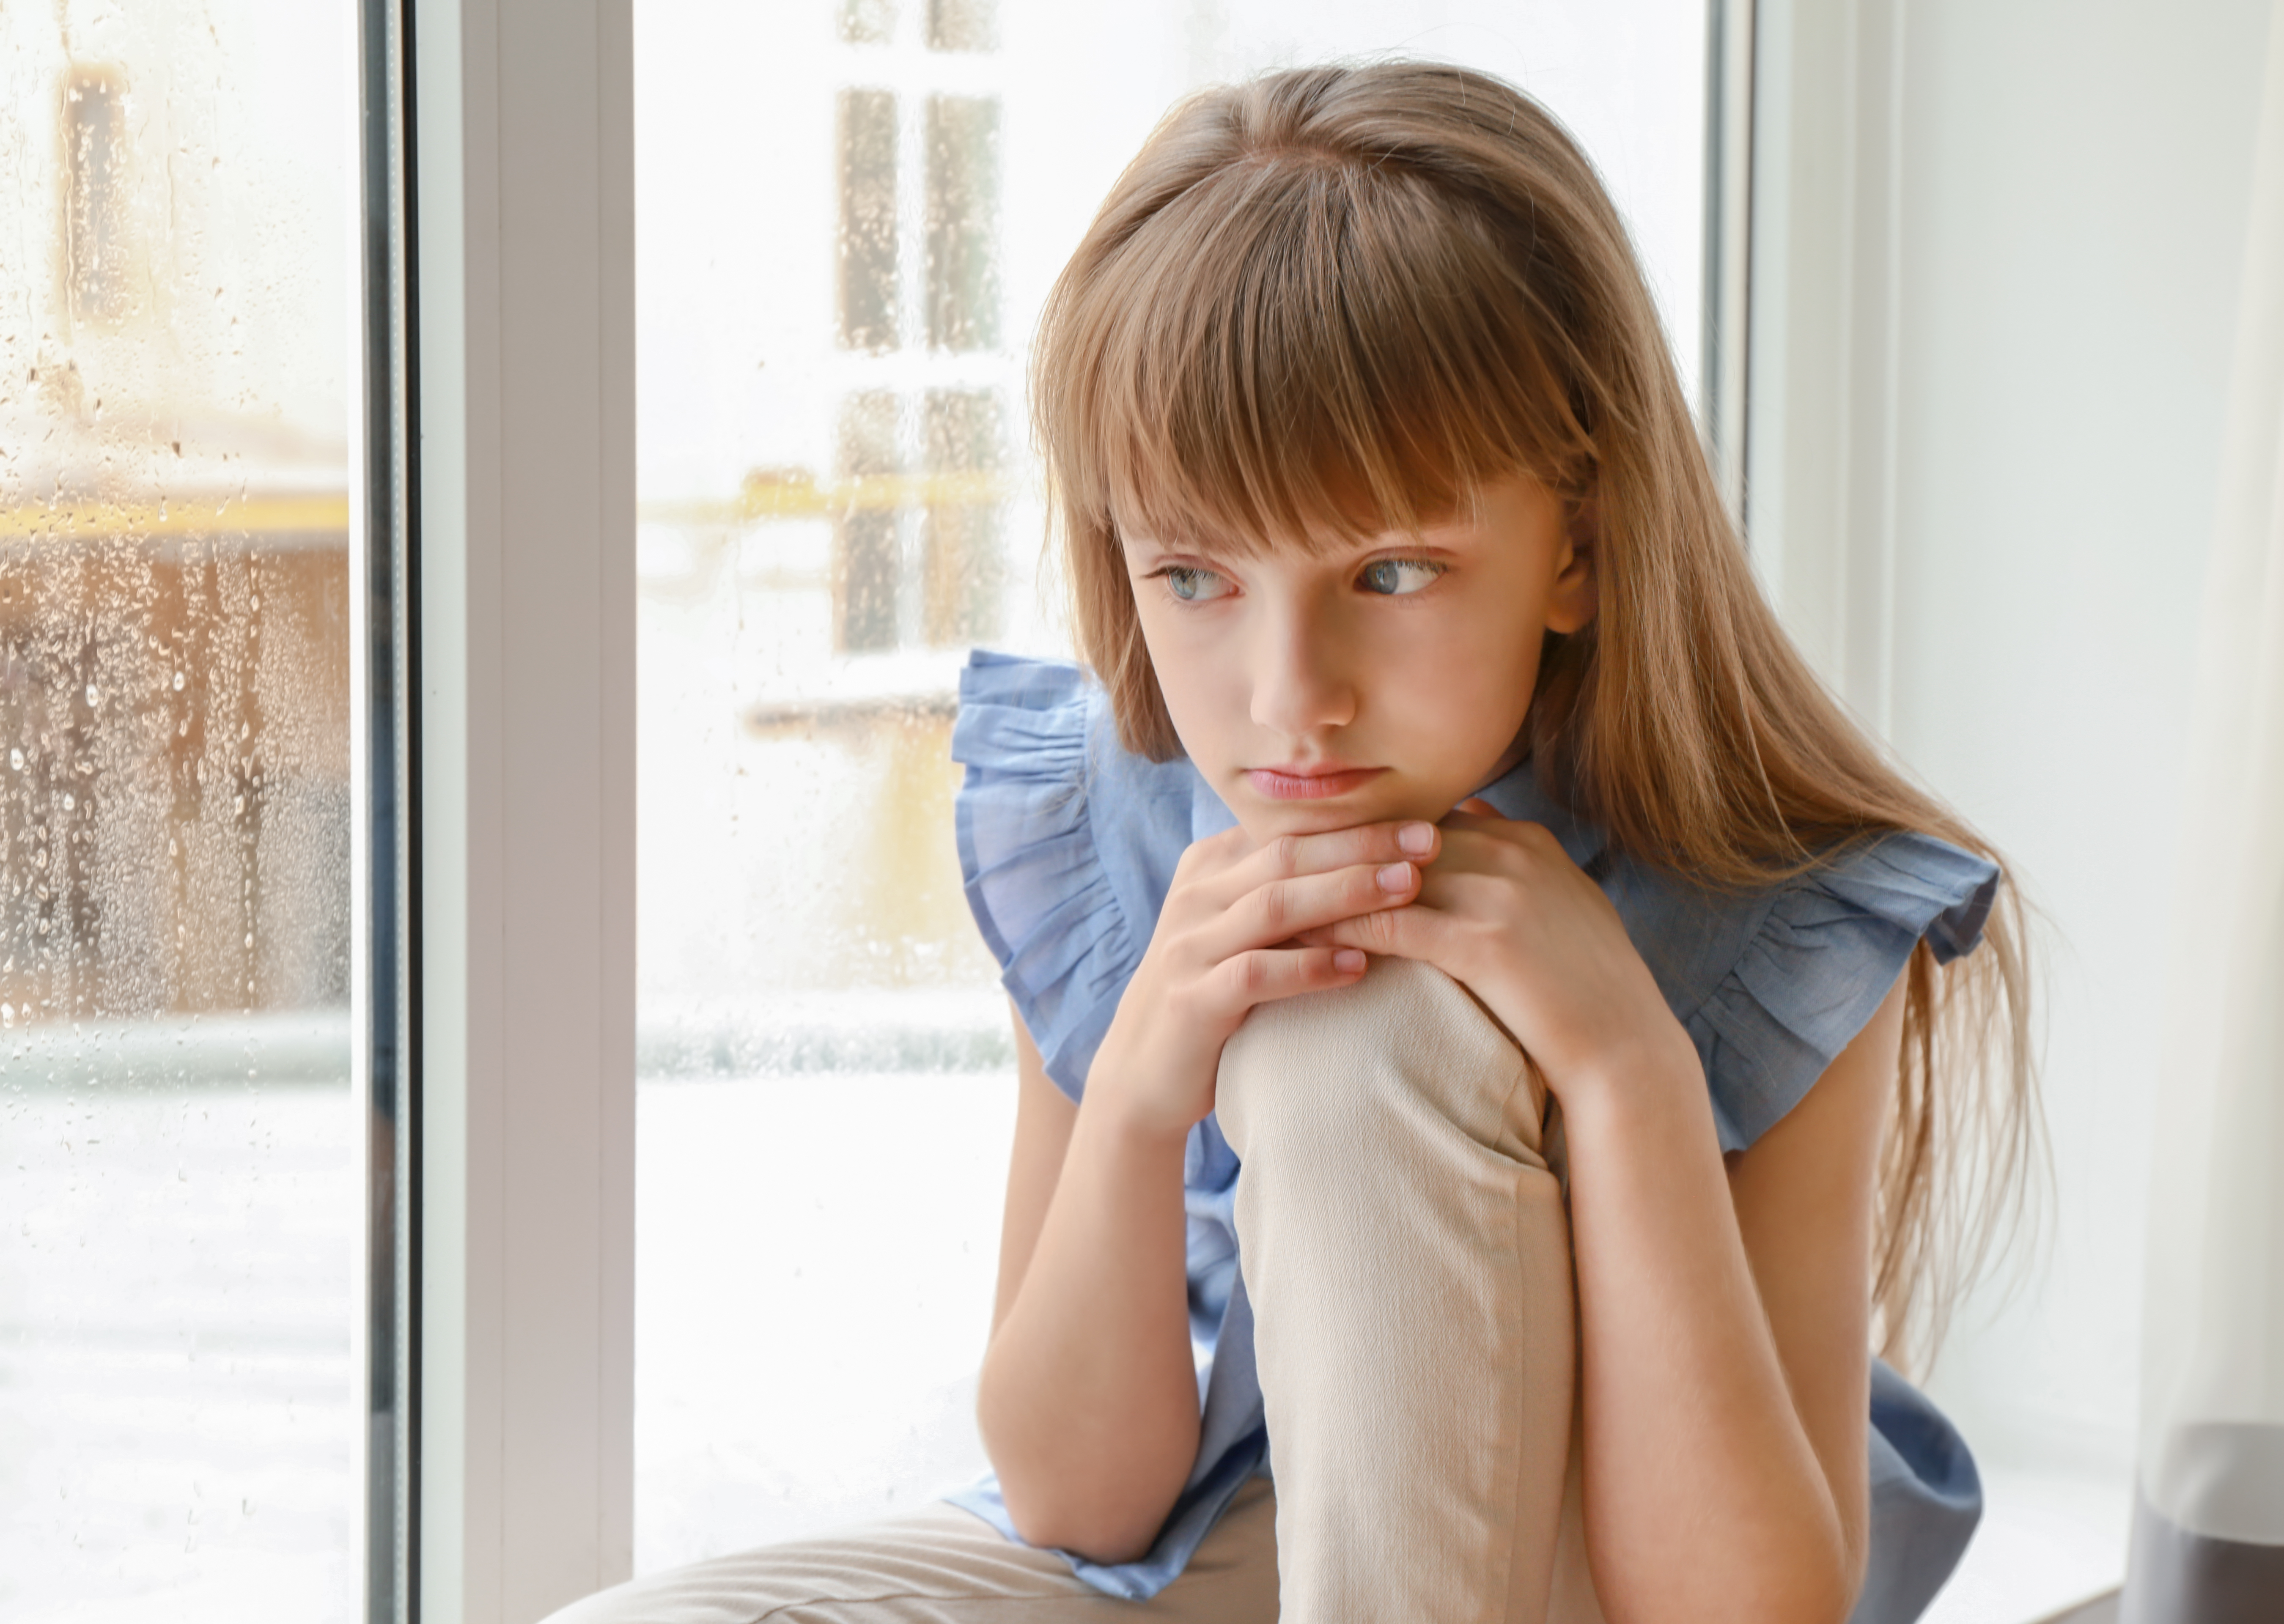 Petite fille boudant près de la fenêtre | Source : Shutterstock